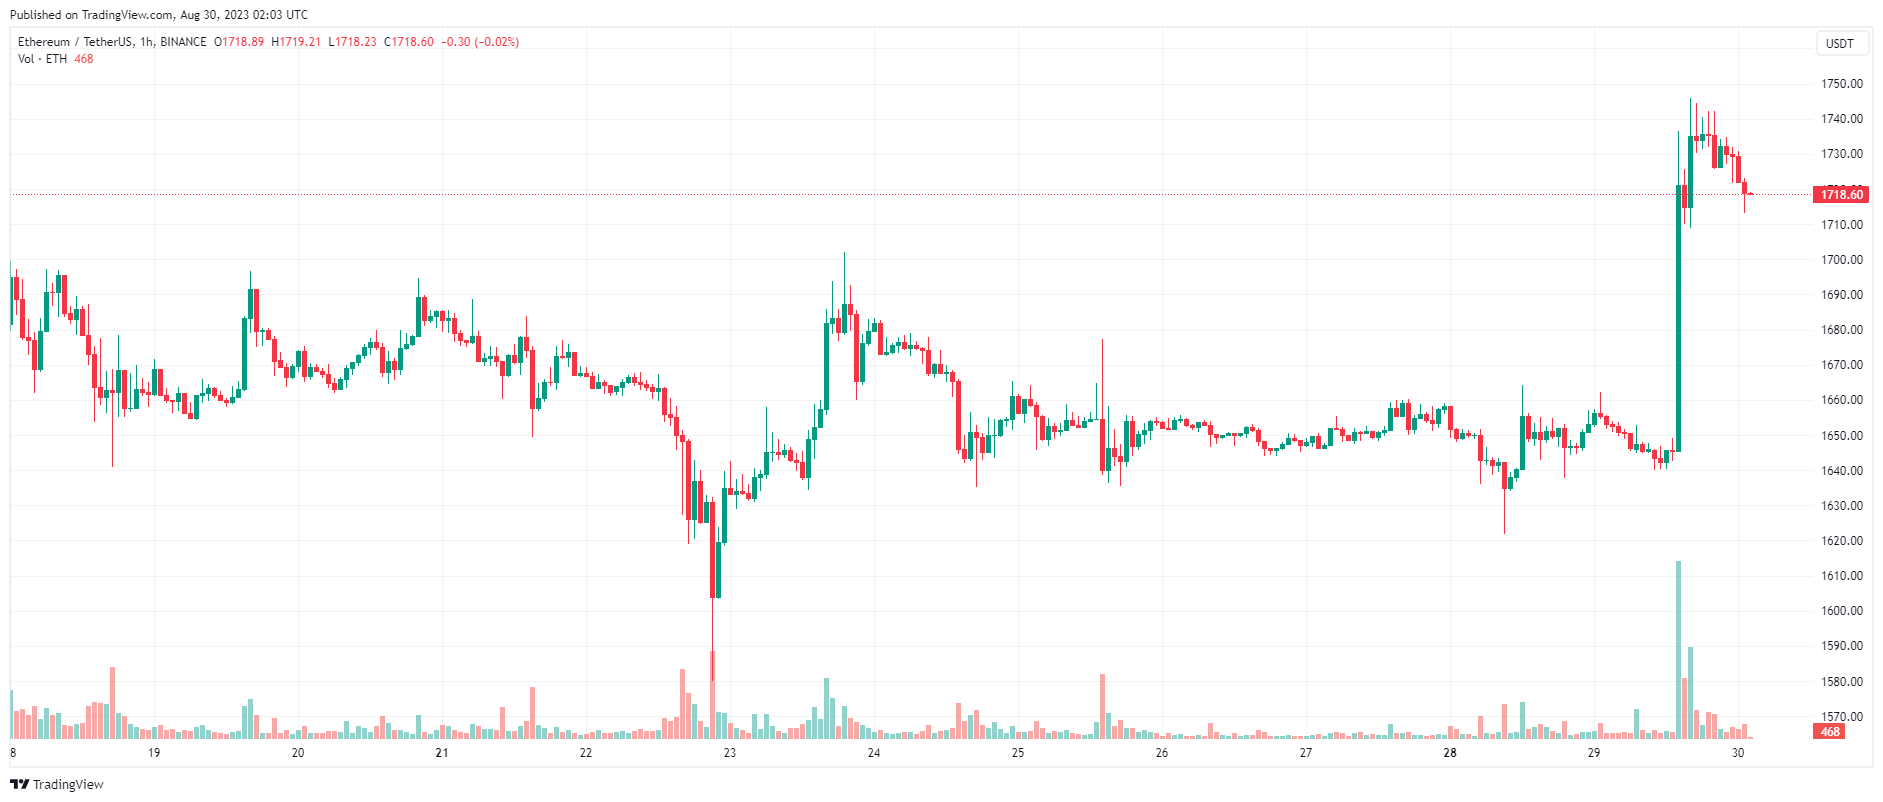 Giá Coin hôm nay 30/08: Bitcoin bật tăng chạm $ 28.000, altcoin khởi sắc khi Phố Wall leo dốc 3 phiên liên tiếp